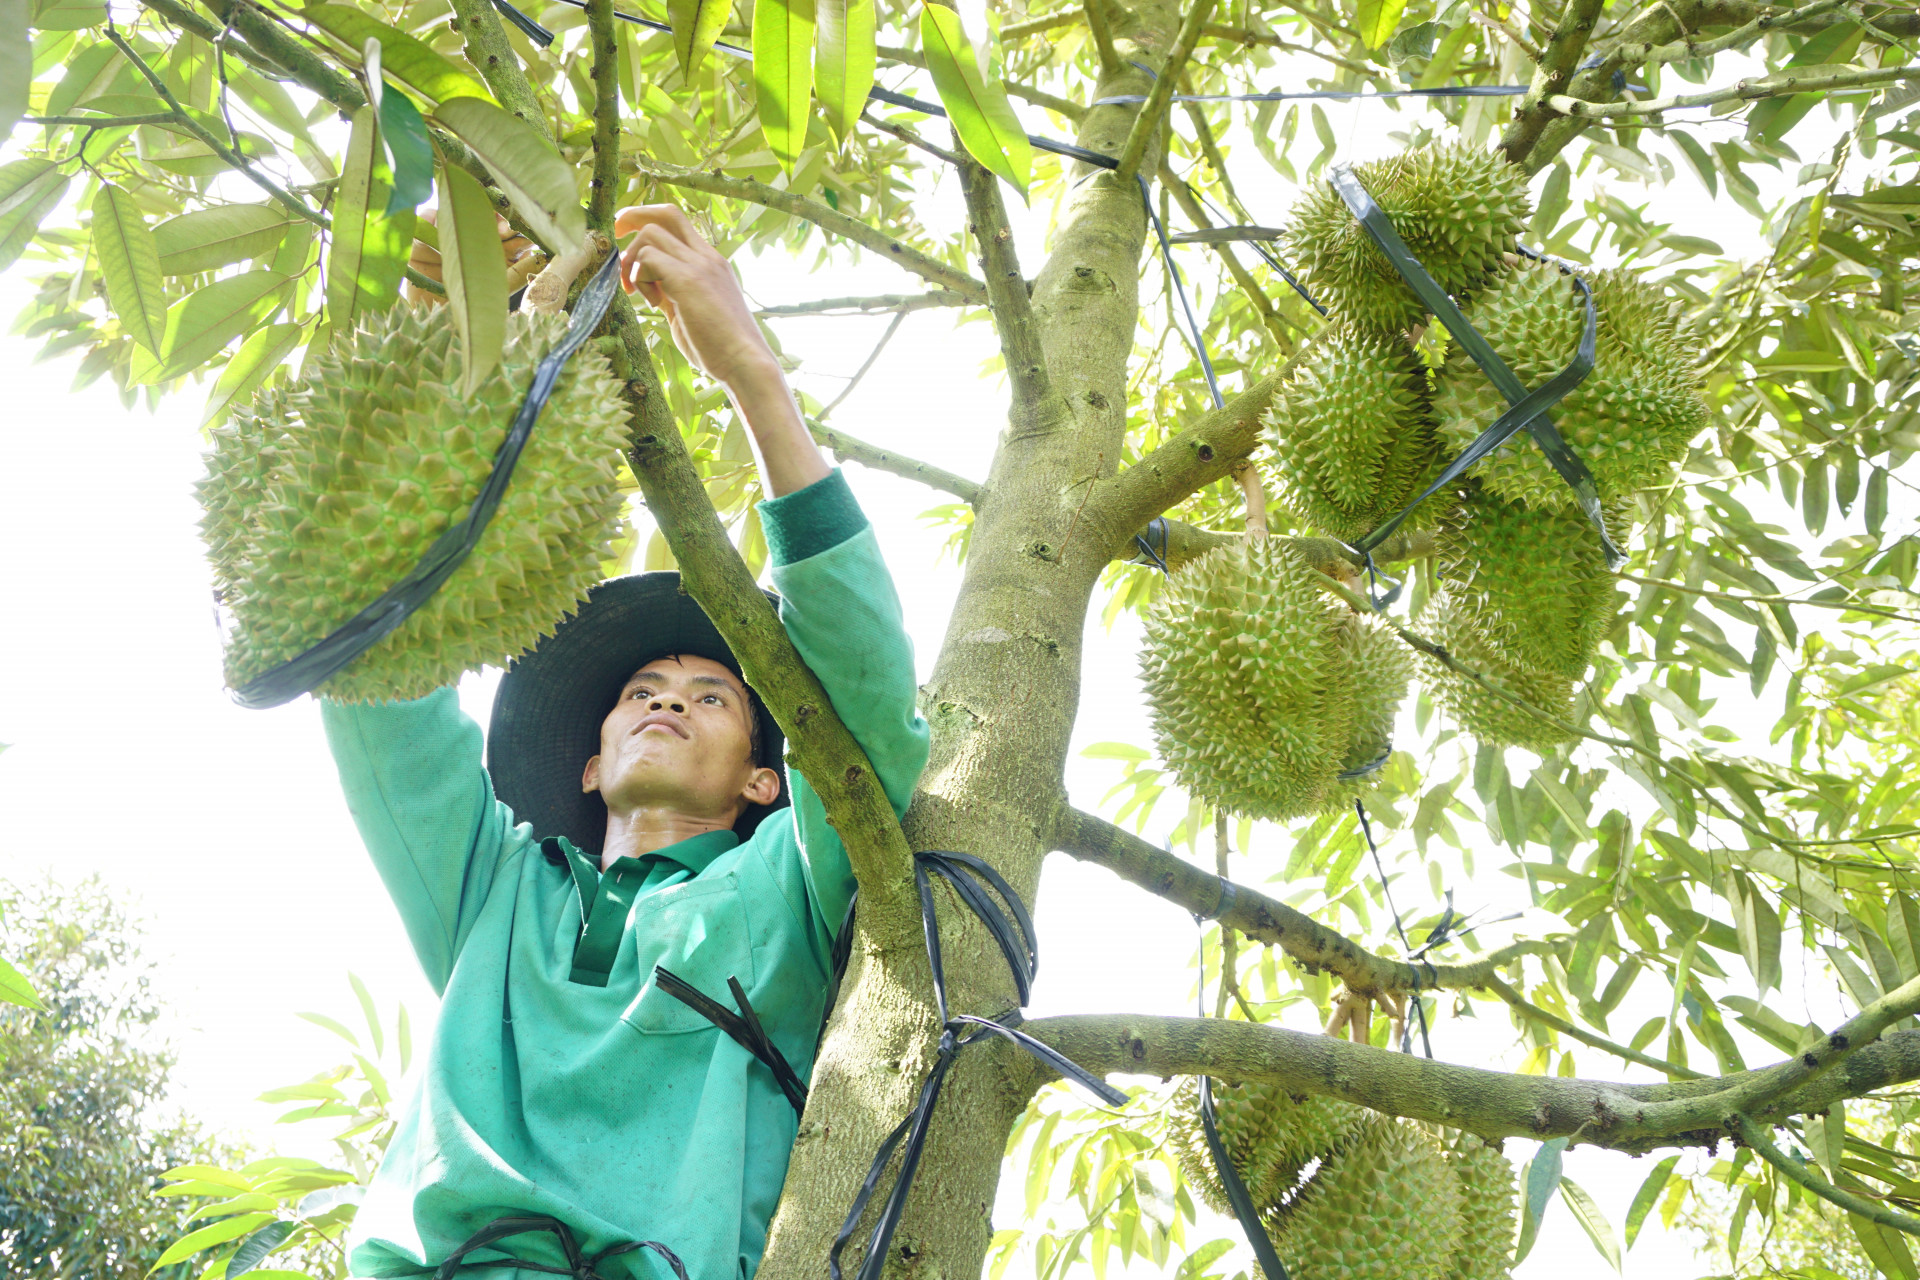 Sầu riêng Khánh Sơn đã trở thành thương hiệu vàng nông nghiệp Việt Nam, mang lại thu nhập cao cho người dân địa phương